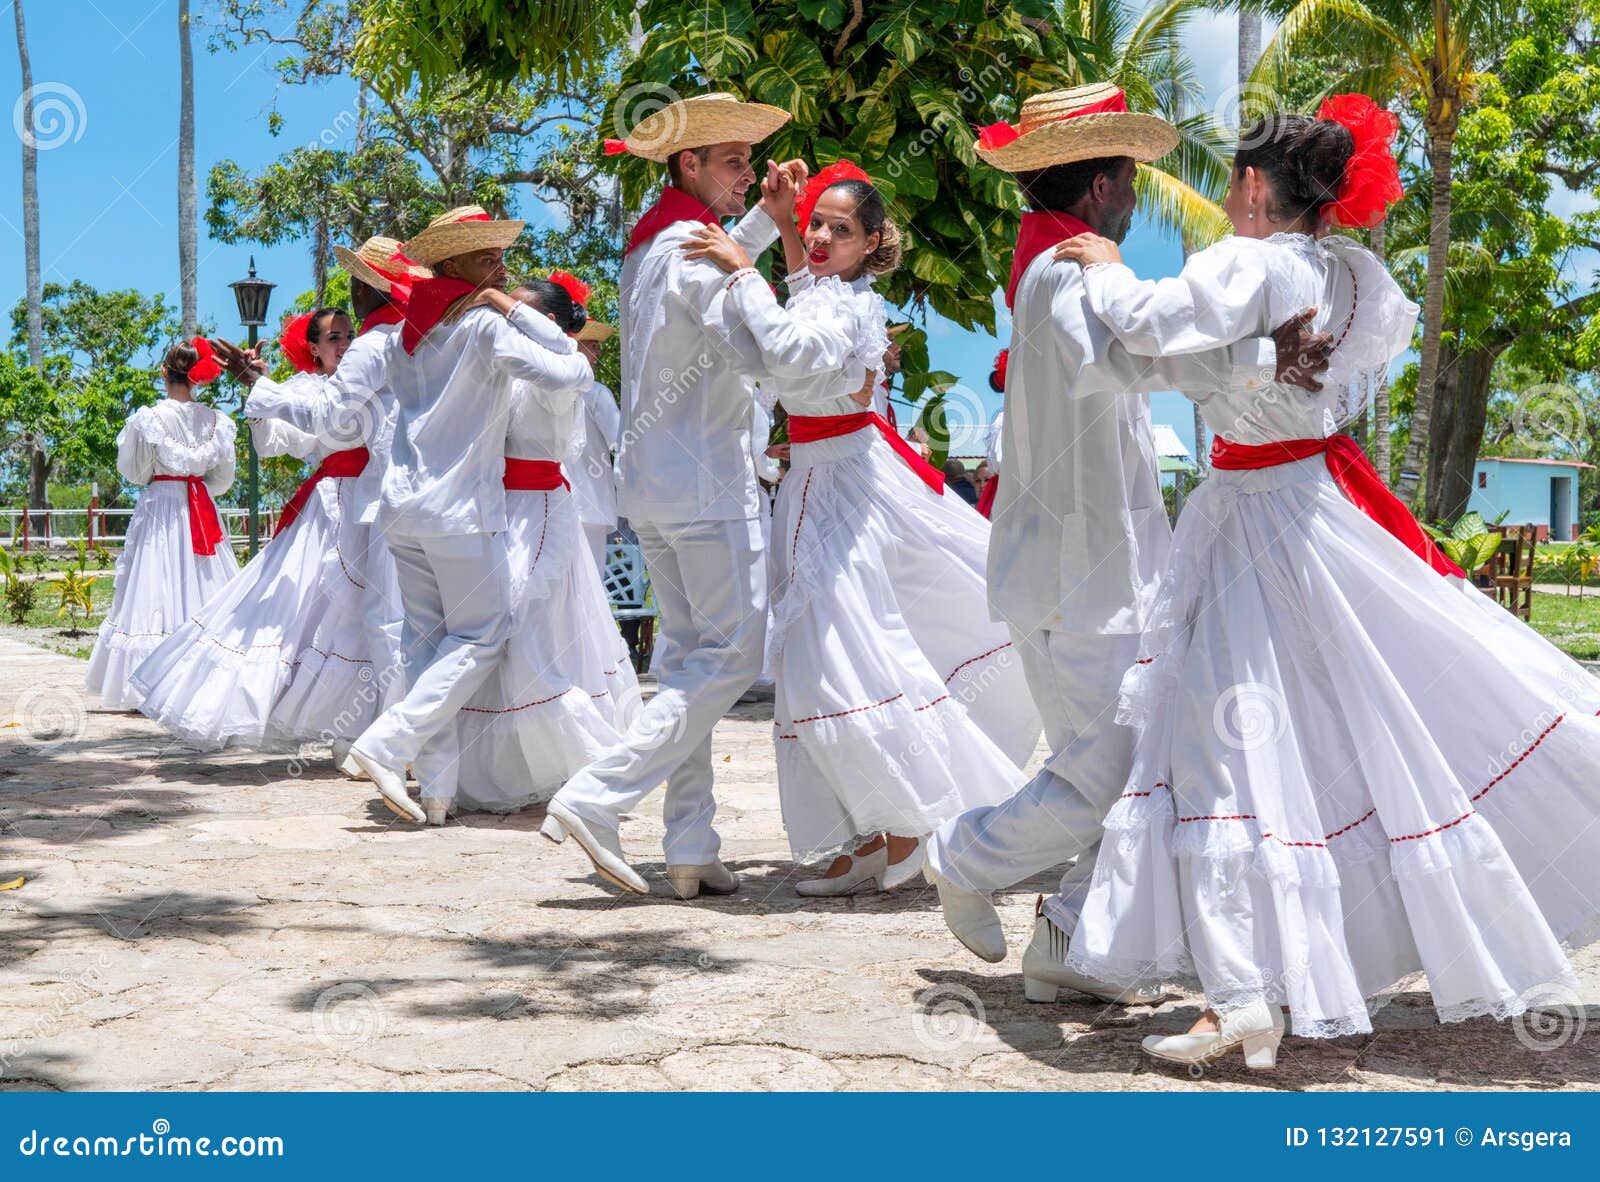 Кубинский народный танец. Национальные кубинские танцы. Куба танцы национальные. Кубинский народный костюм.